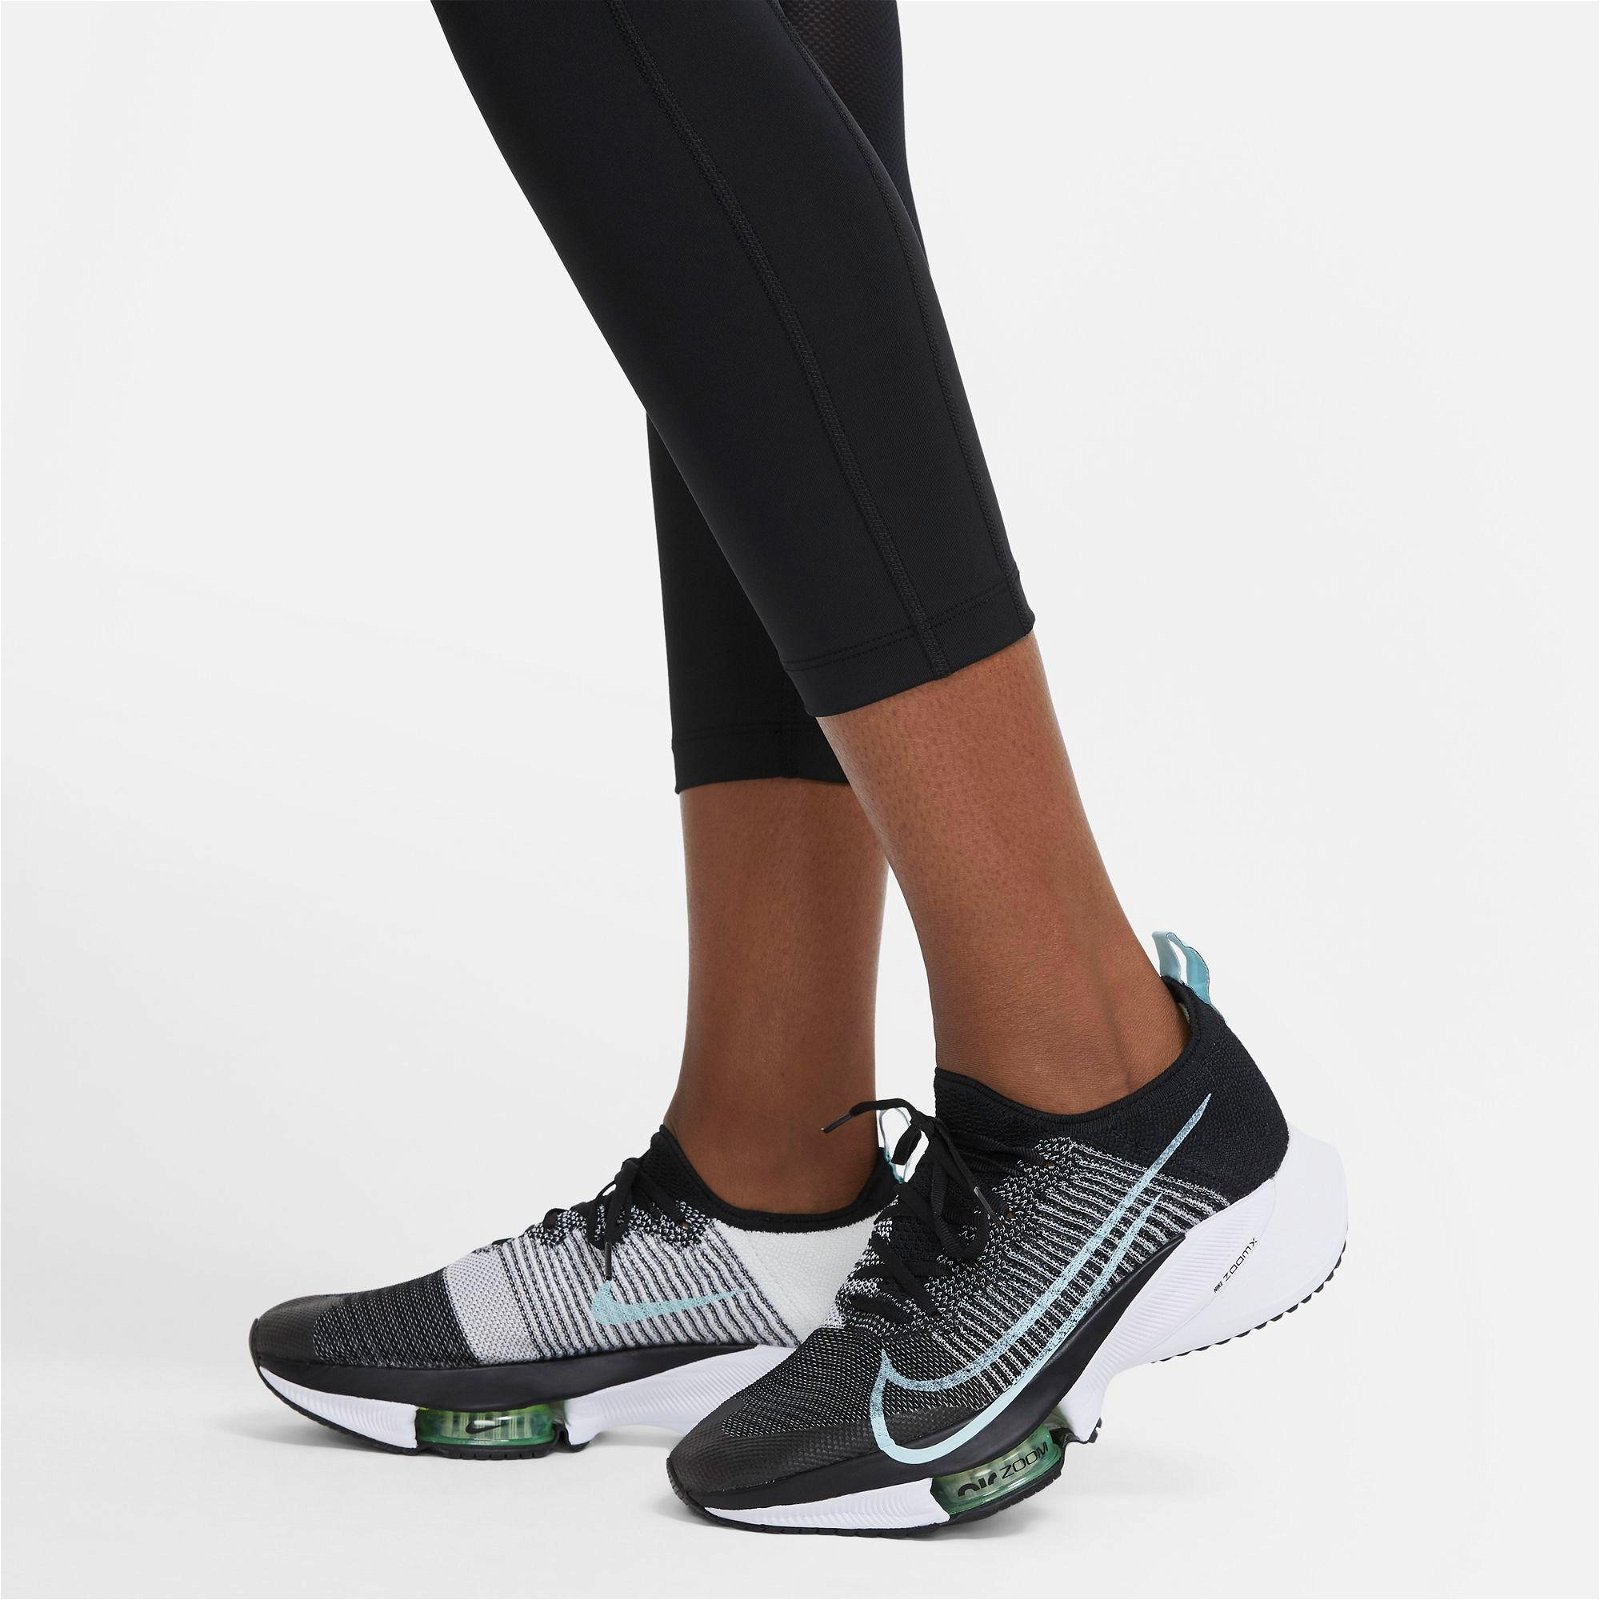 Nike Dri-Fit Fast Büyük Beden Kadın Siyah Tayt